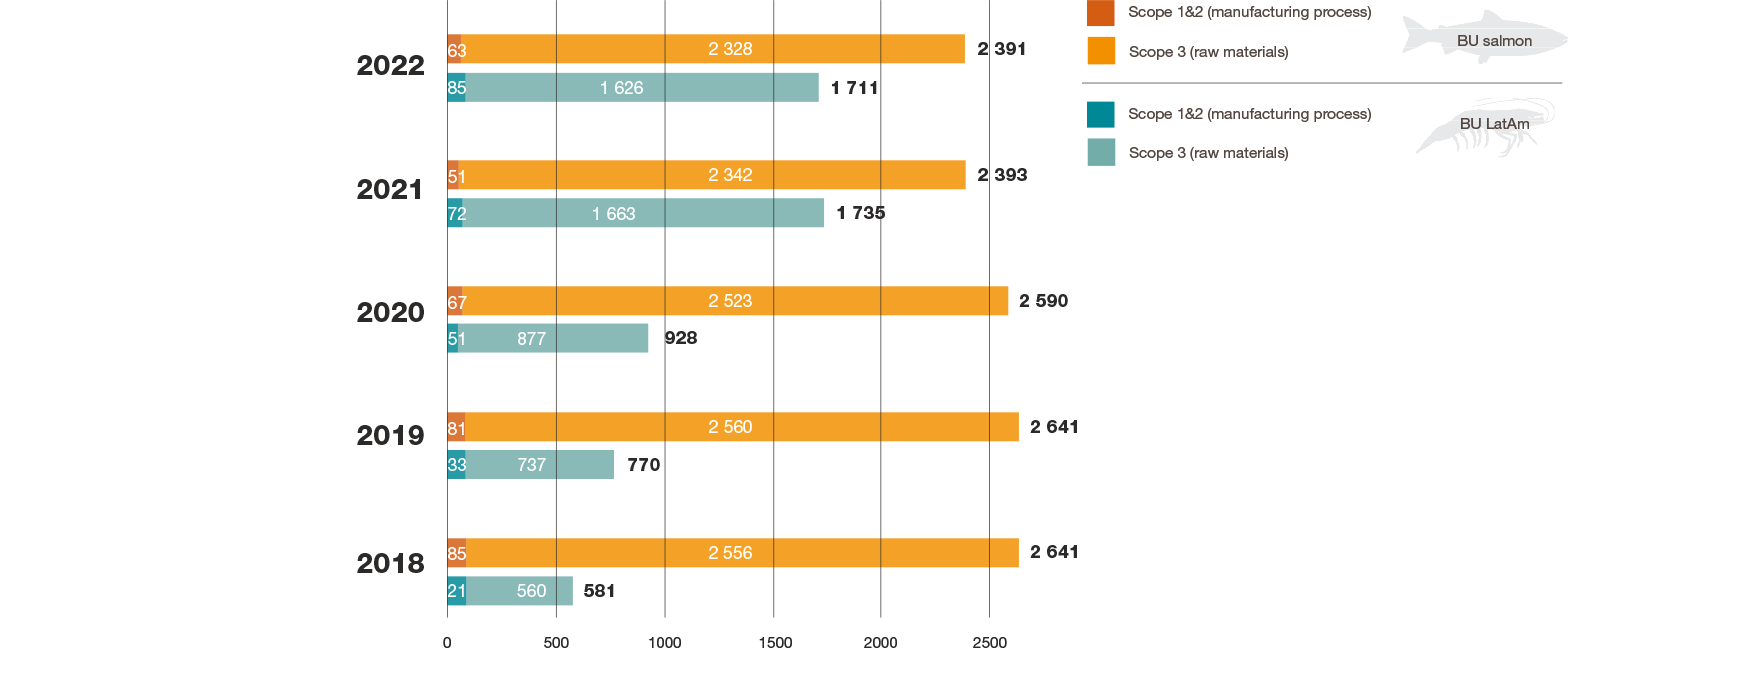 スクレッティングのBUサーモンとBU中南米ラテンアメリカの2018年から2022年までのスコープ1、2、3を含む工場ゲート出荷時におけるでの絶対的